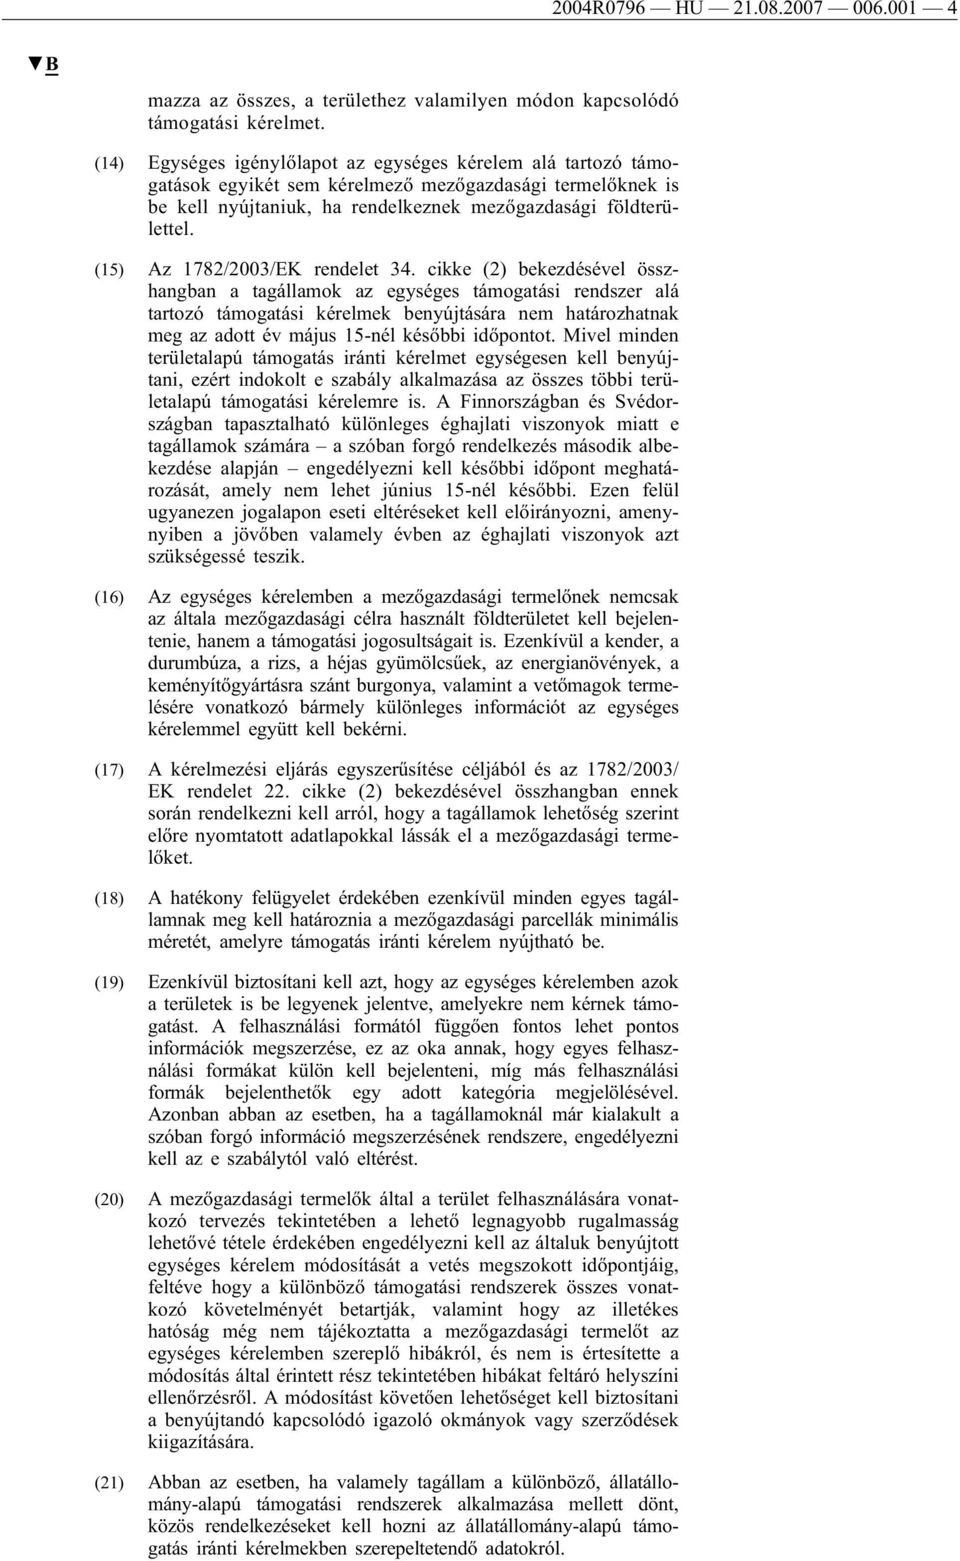 (15) Az 1782/2003/EK rendelet 34.